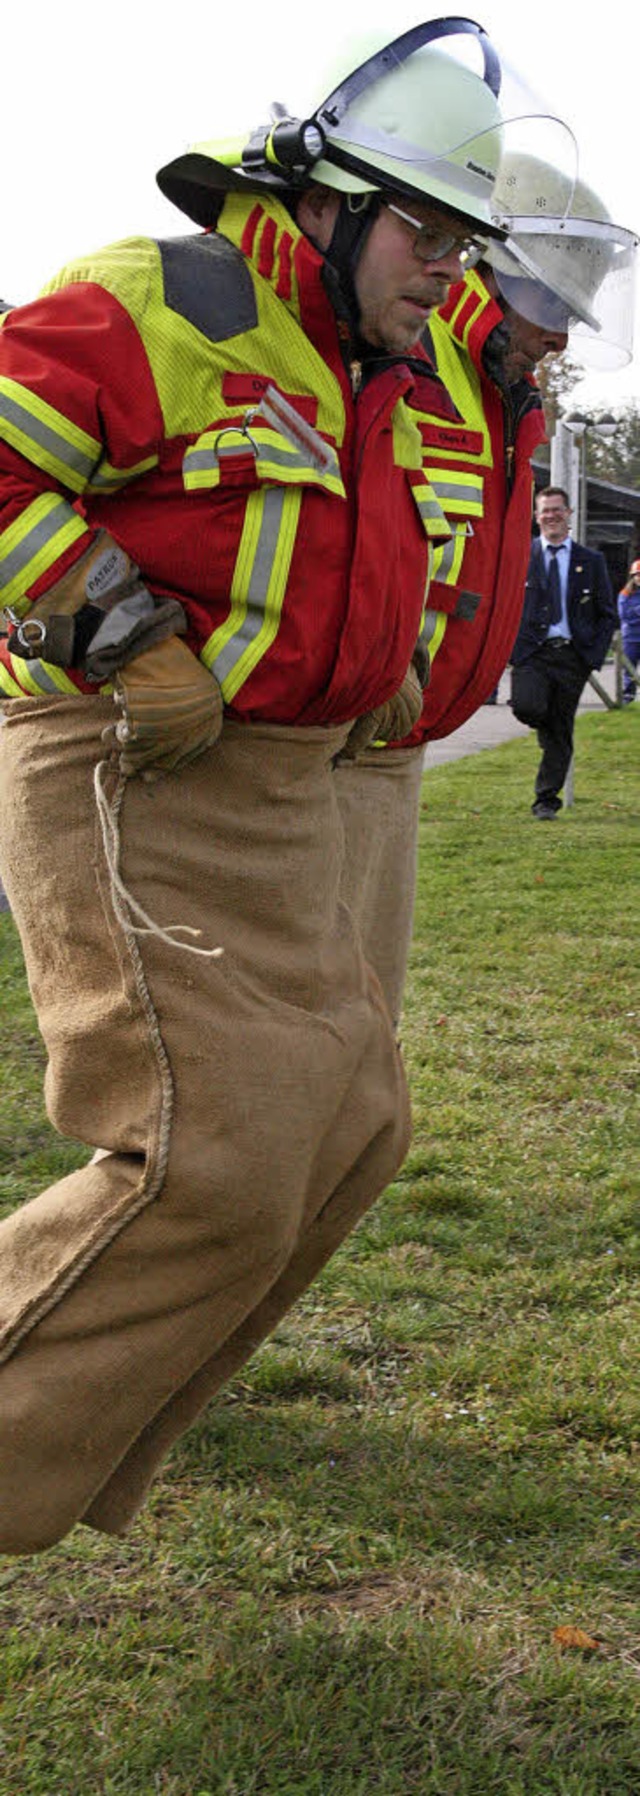 Buche einziehen: zwei Feuerwehrmnner der Abteilung Grwihl beim Sackhpfen   | Foto: Peter Schtz